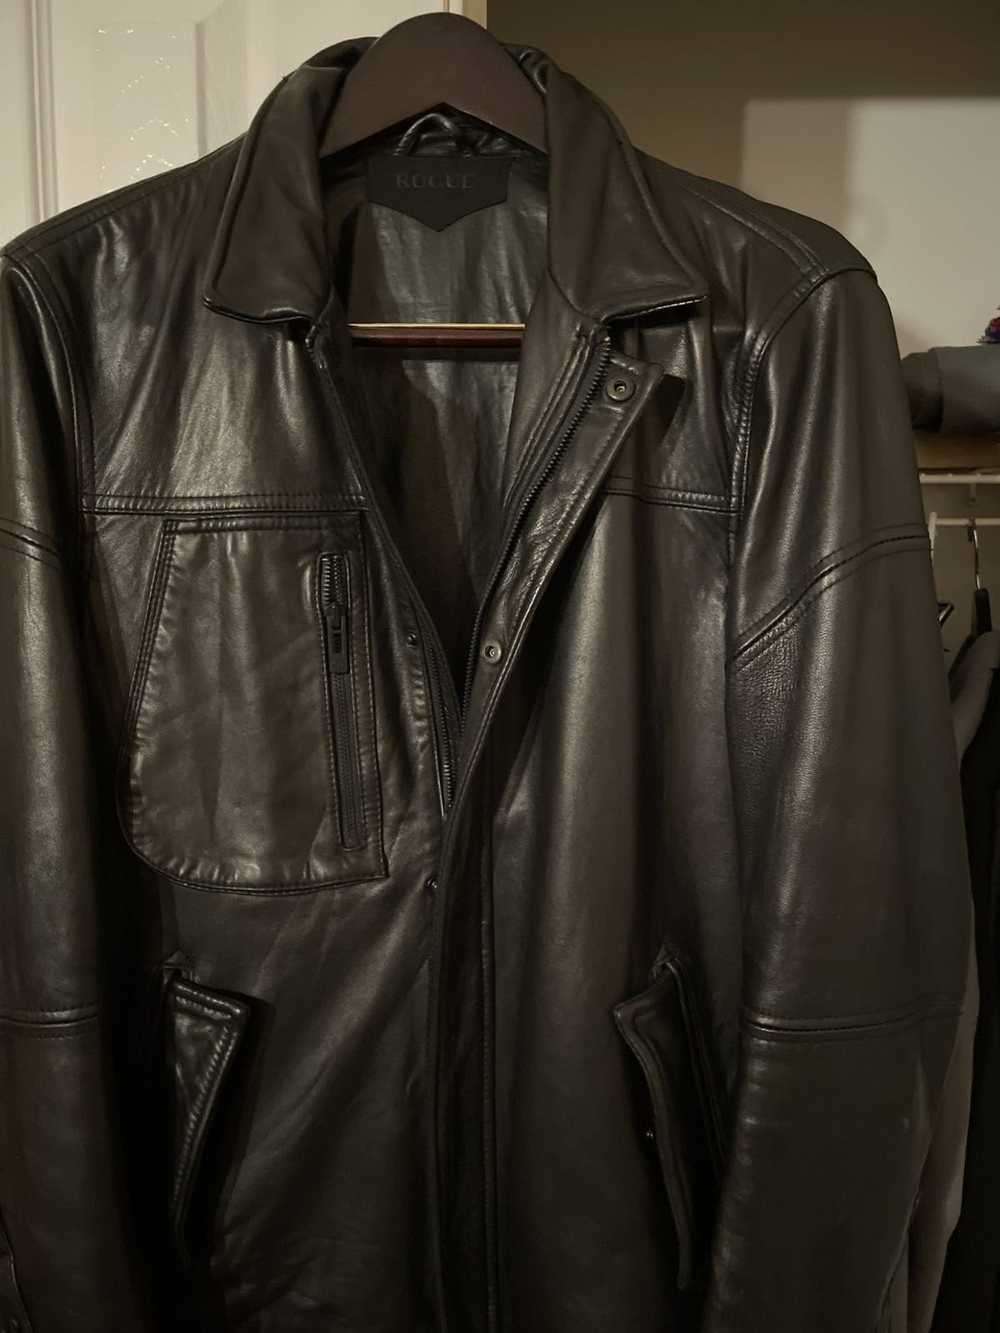 Rogue Leather shirt Jacket - image 10